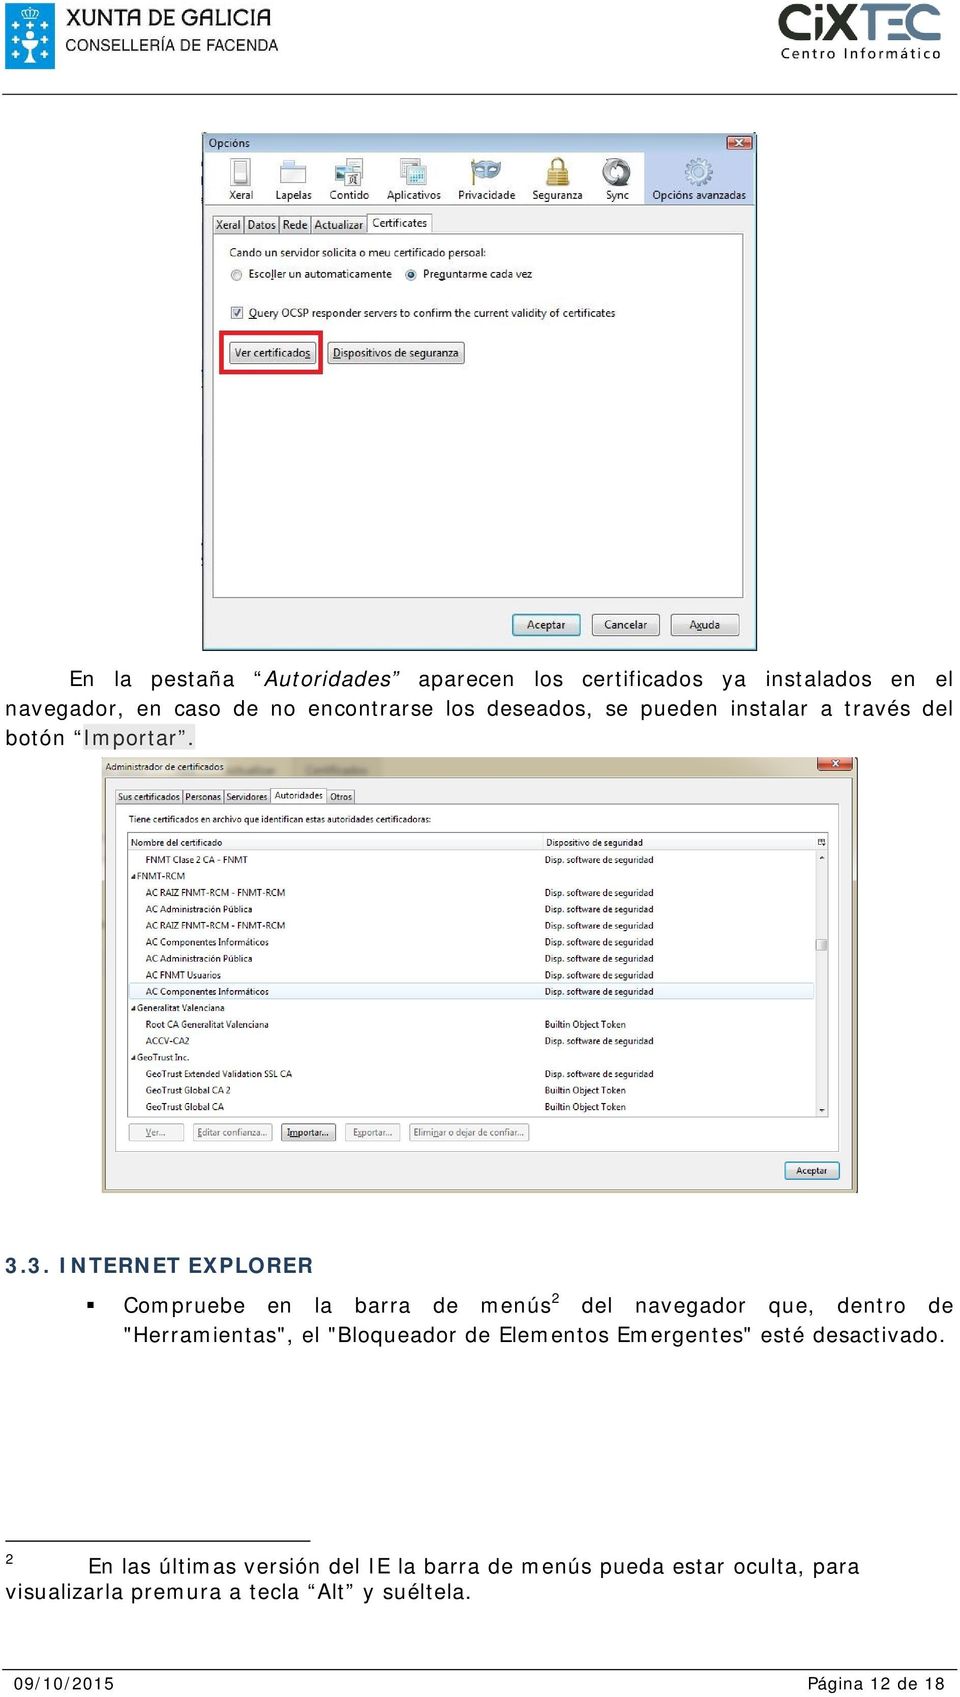 3. INTERNET EXPLORER Compruebe en la barra de menús 2 del navegador que, dentro de "Herramientas", el "Bloqueador de